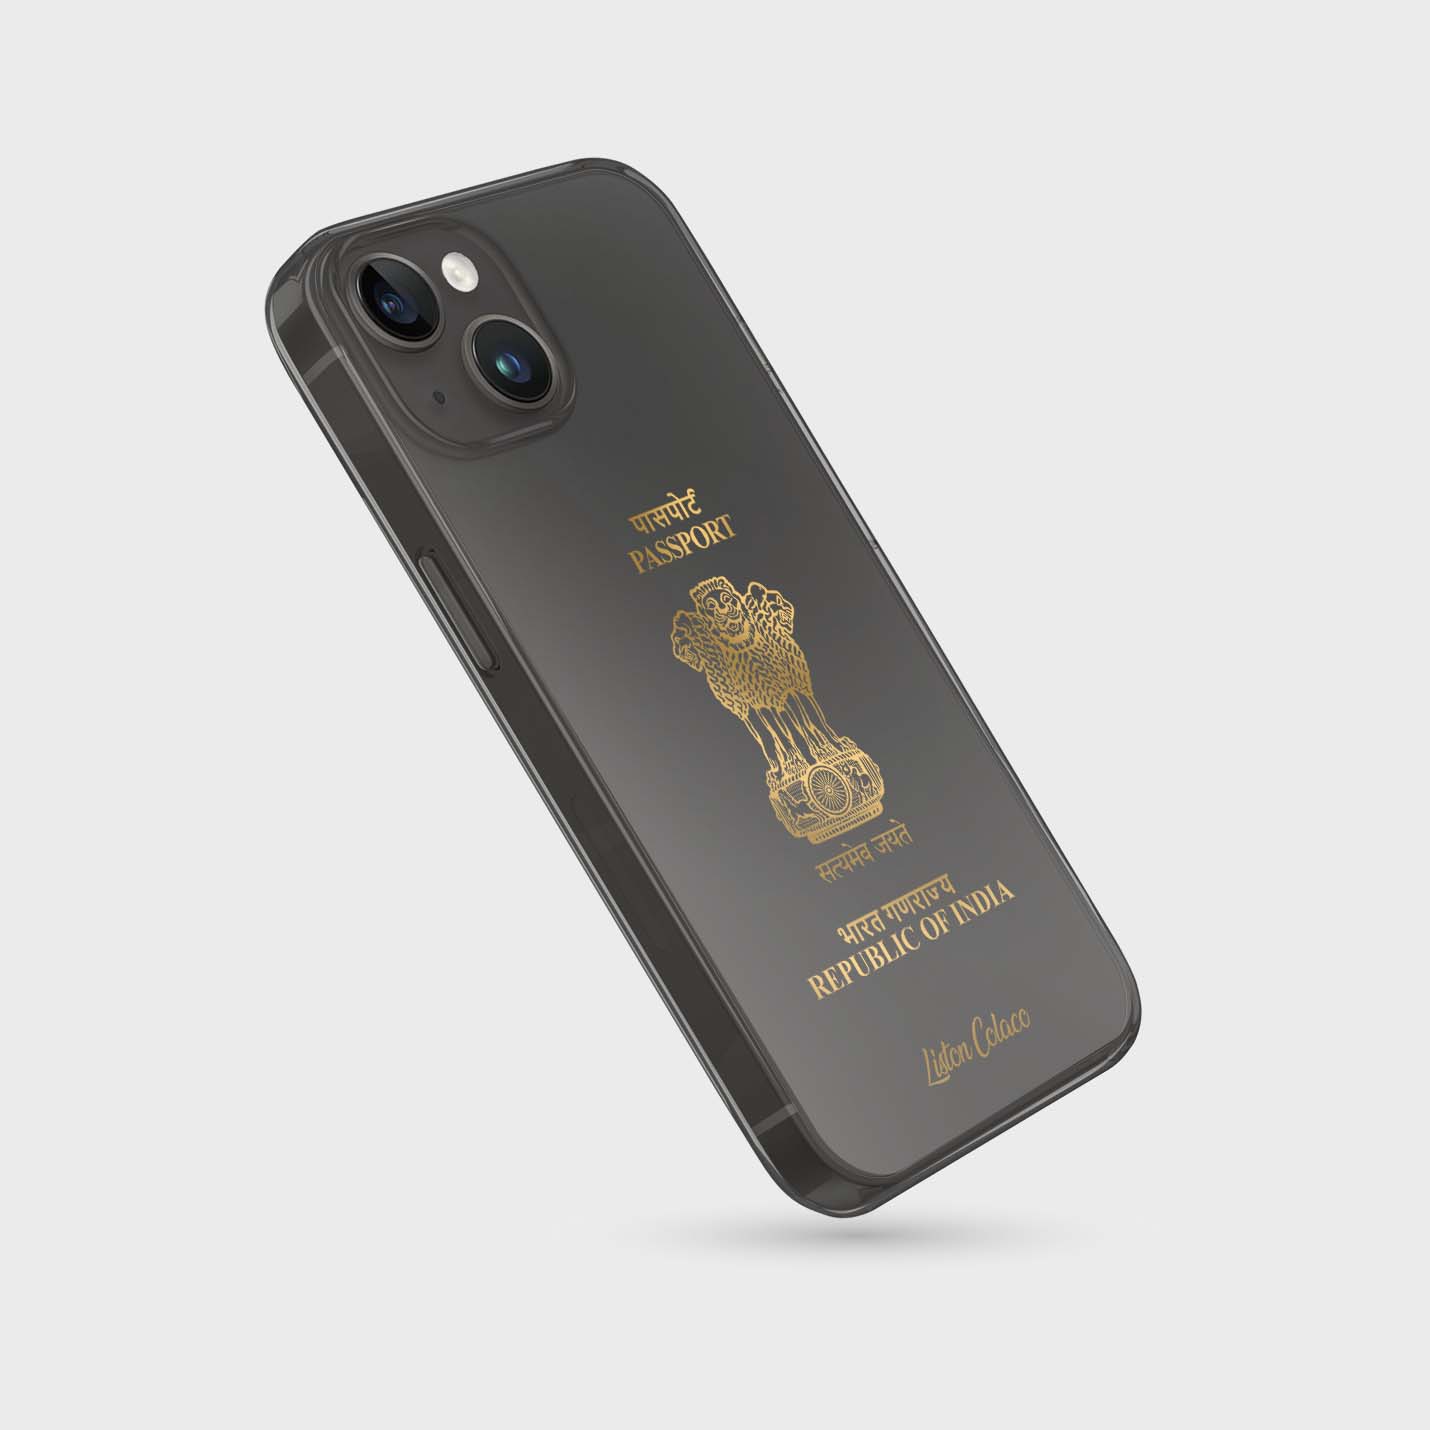 Handyhüllen mit Reisepass - Indien - 1instaphone